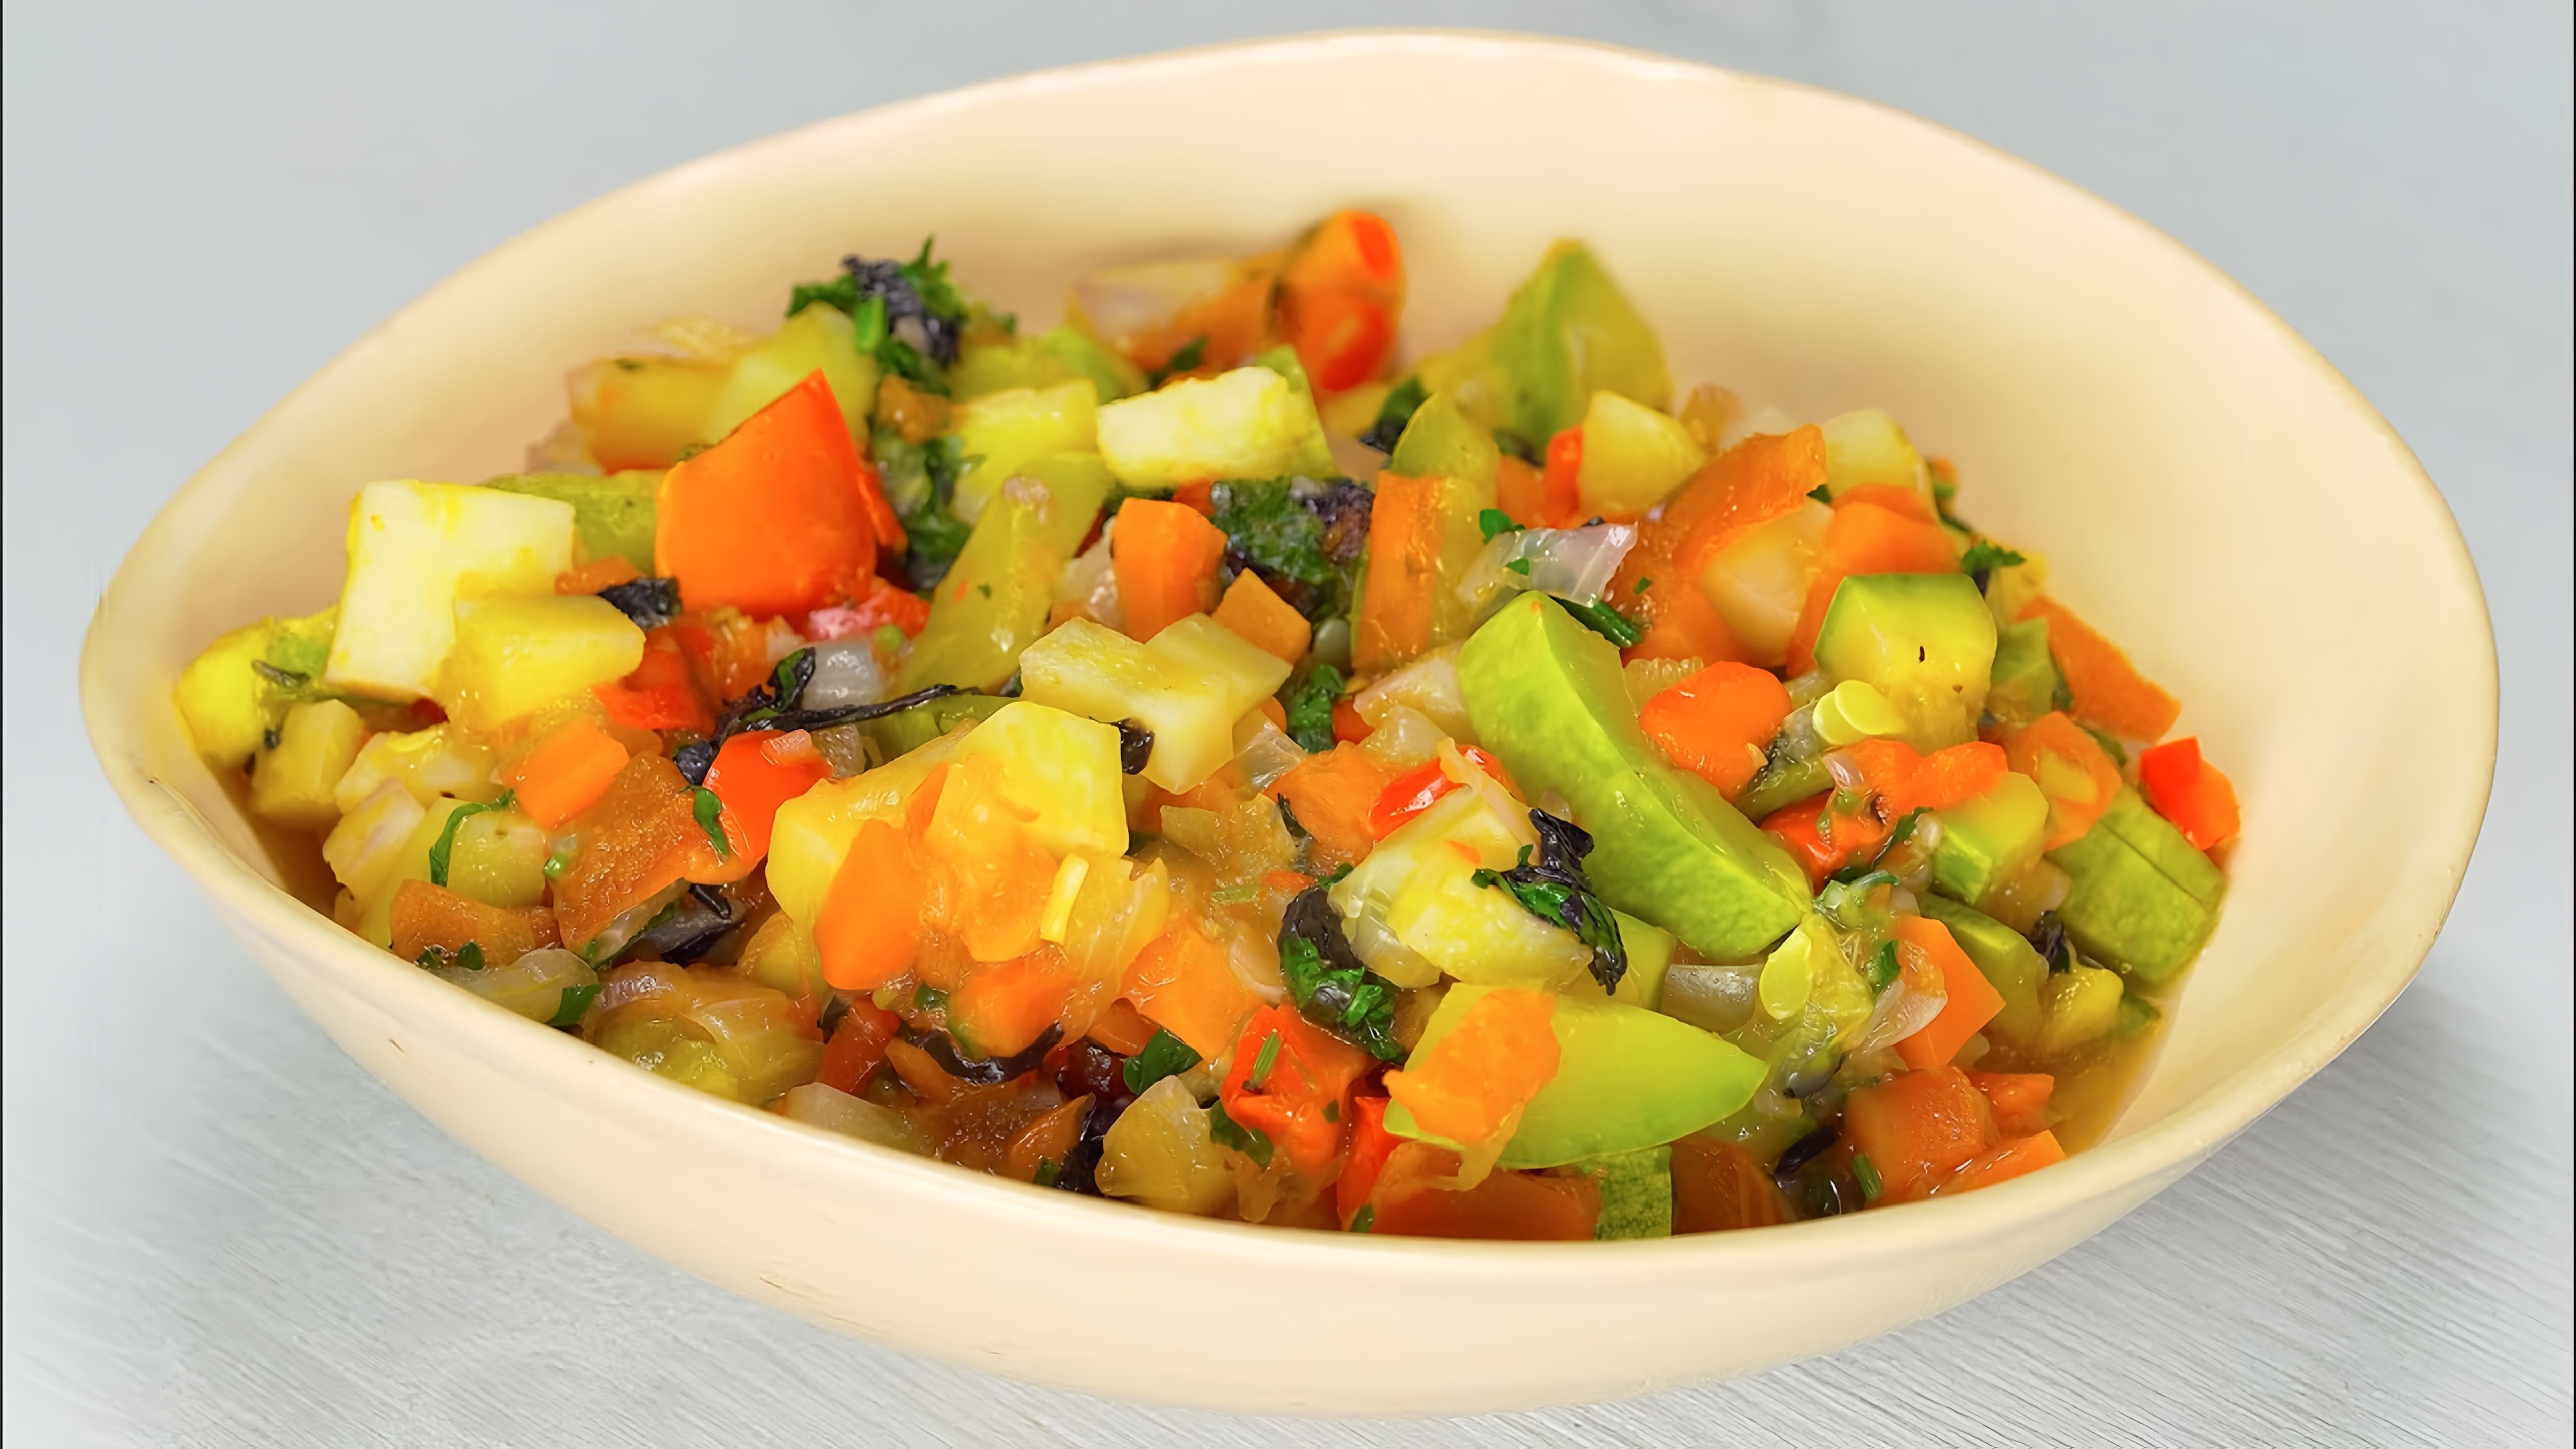 Овощное рагу с кабачками - это вкусное и полезное блюдо, которое можно приготовить в домашних условиях